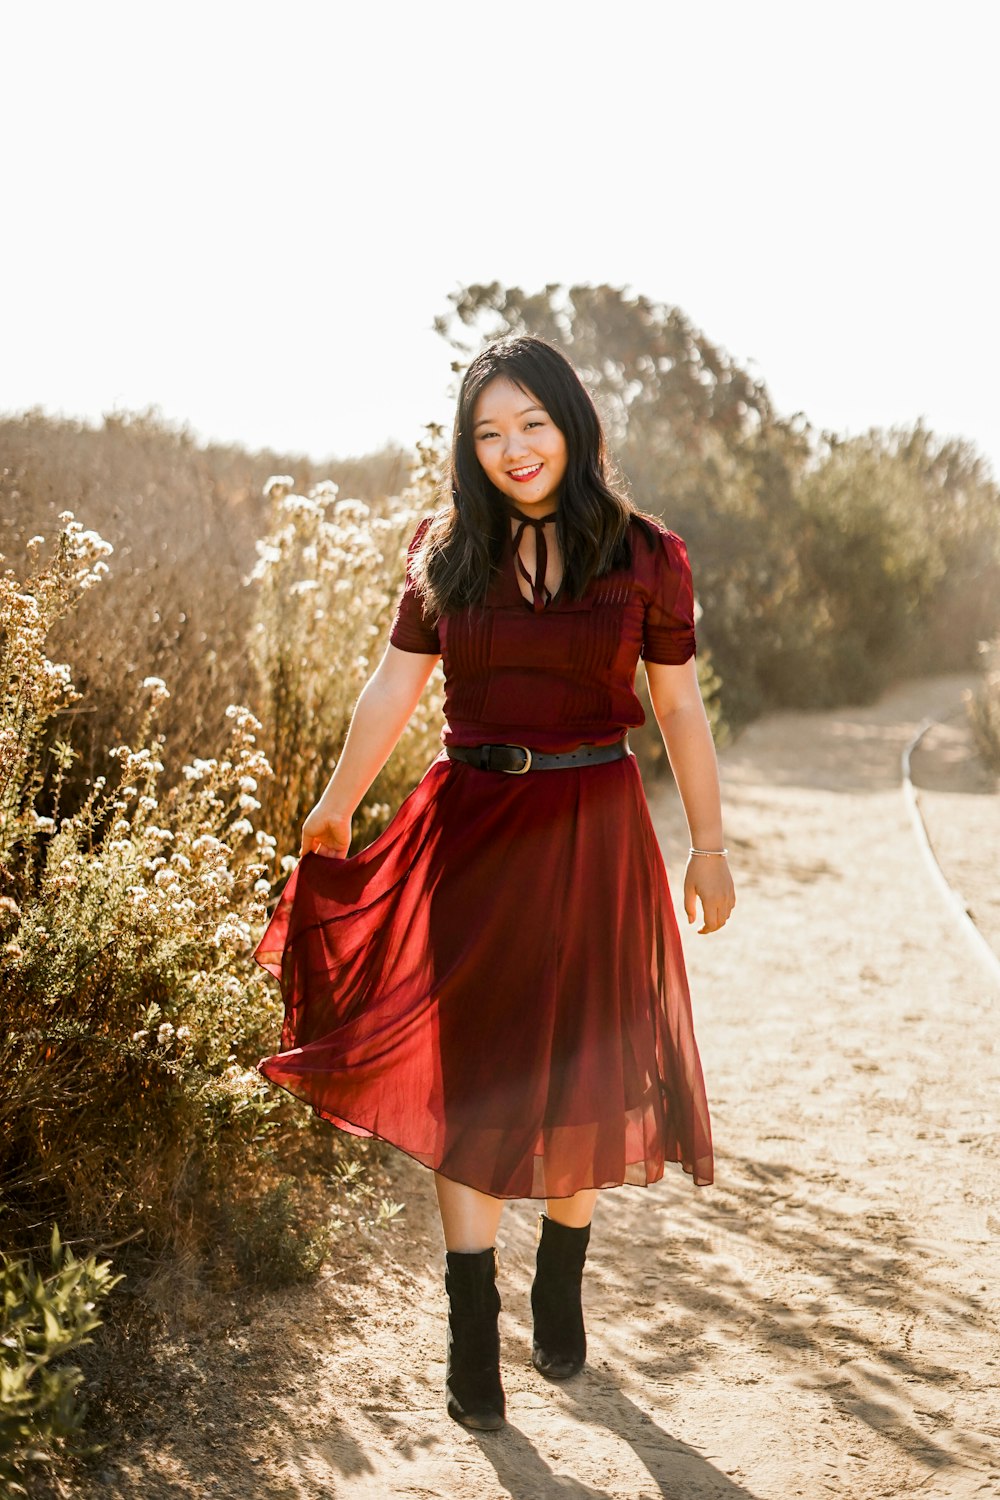 빨간 드레스를 입은 여자가 비포장 도로를 걷고 있다